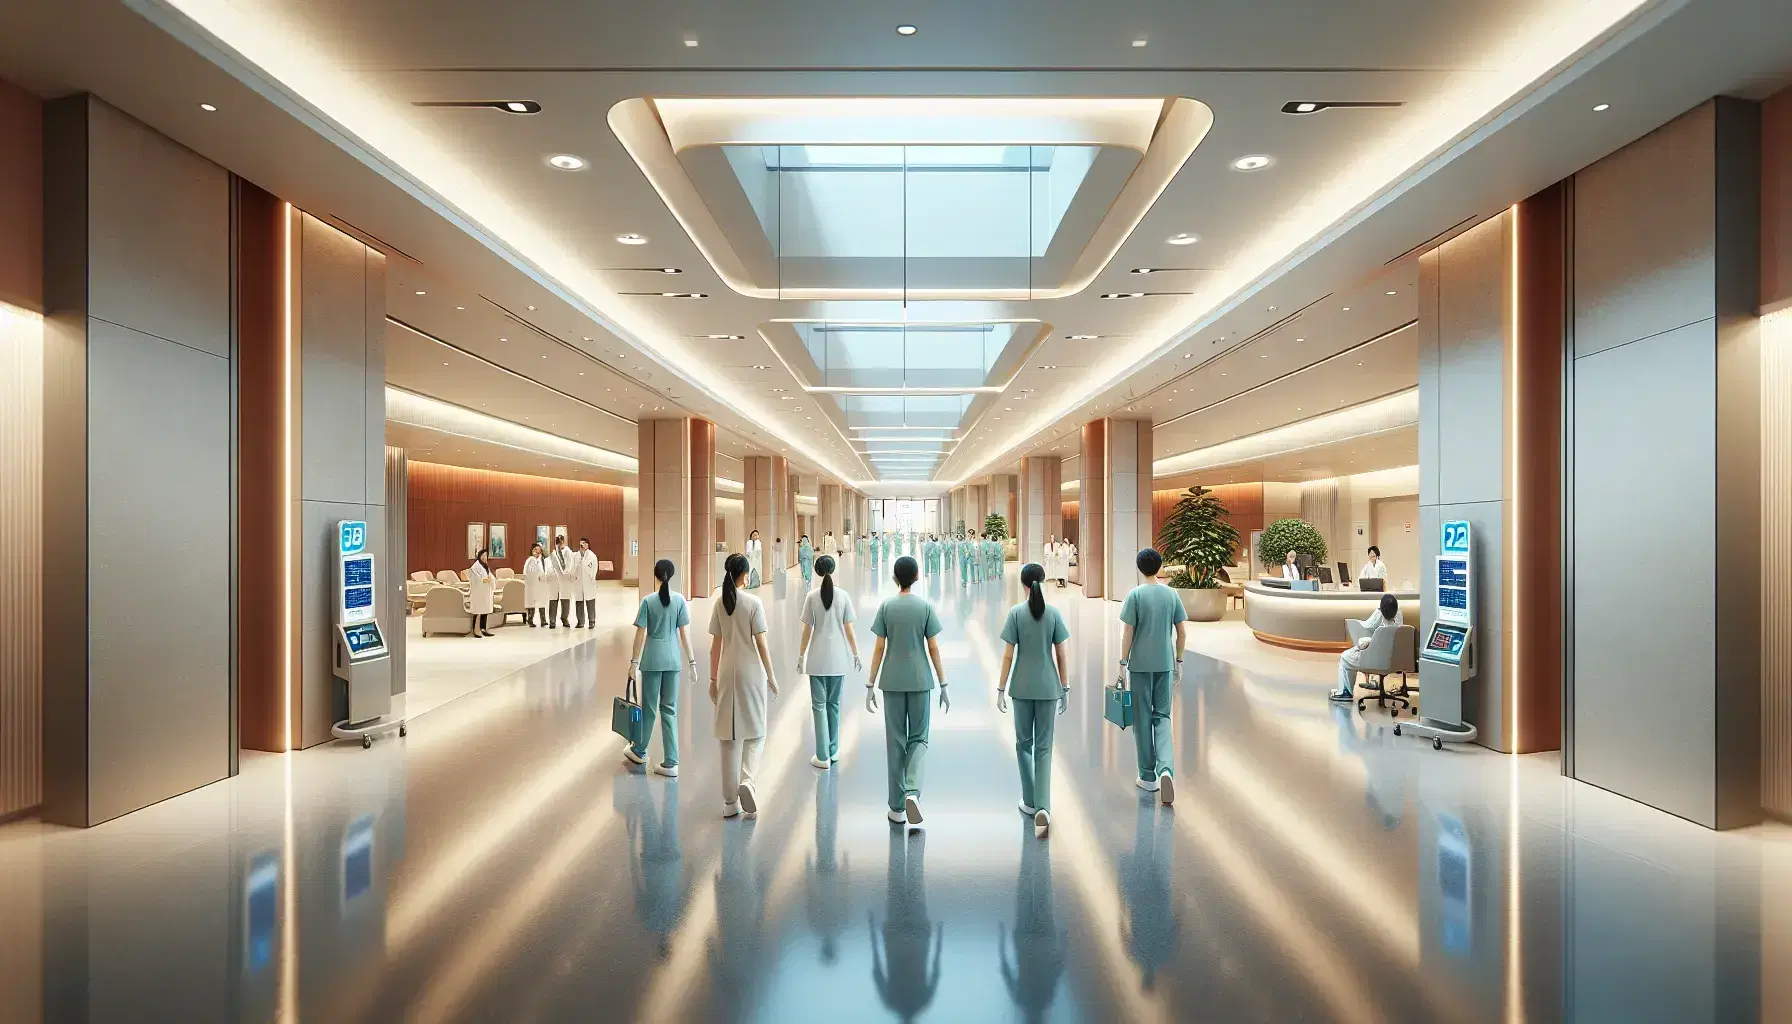 Centro médico moderno con profesionales de la salud caminando por un pasillo iluminado, puertas de vidrio, equipo de alta tecnología y recepción al fondo.